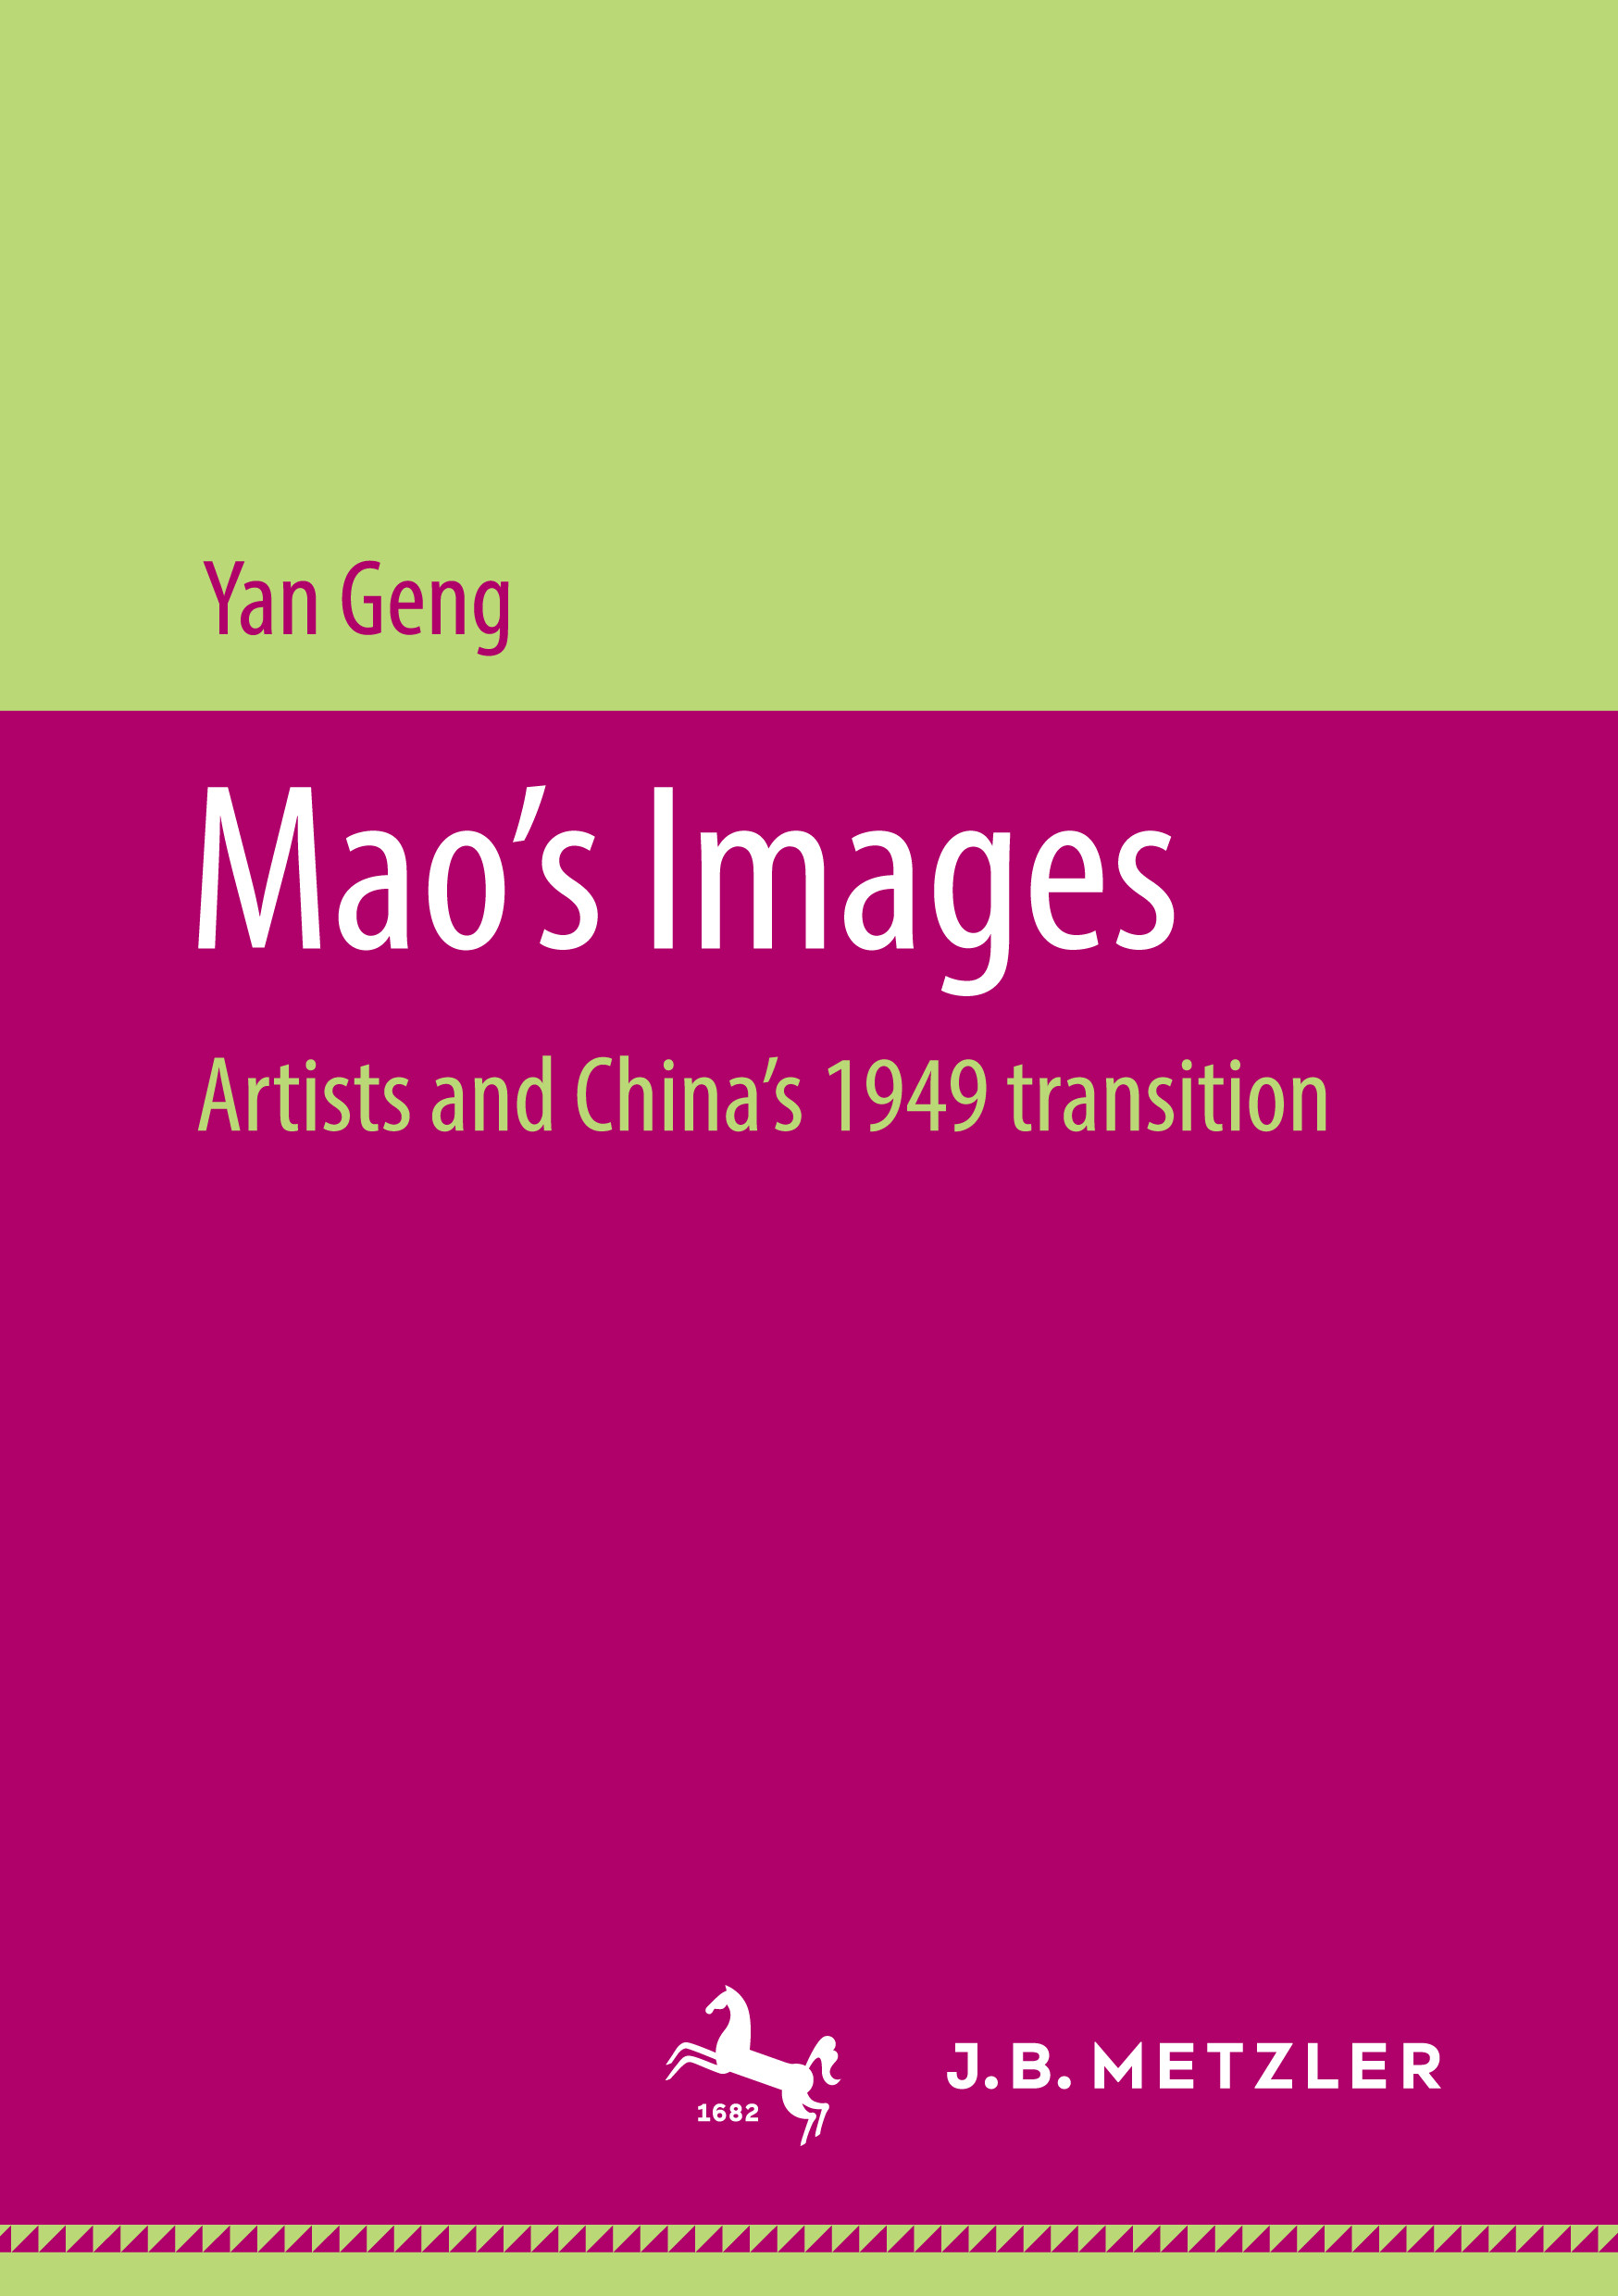 Yan Geng: Mao’s Images. J.B. Metzler